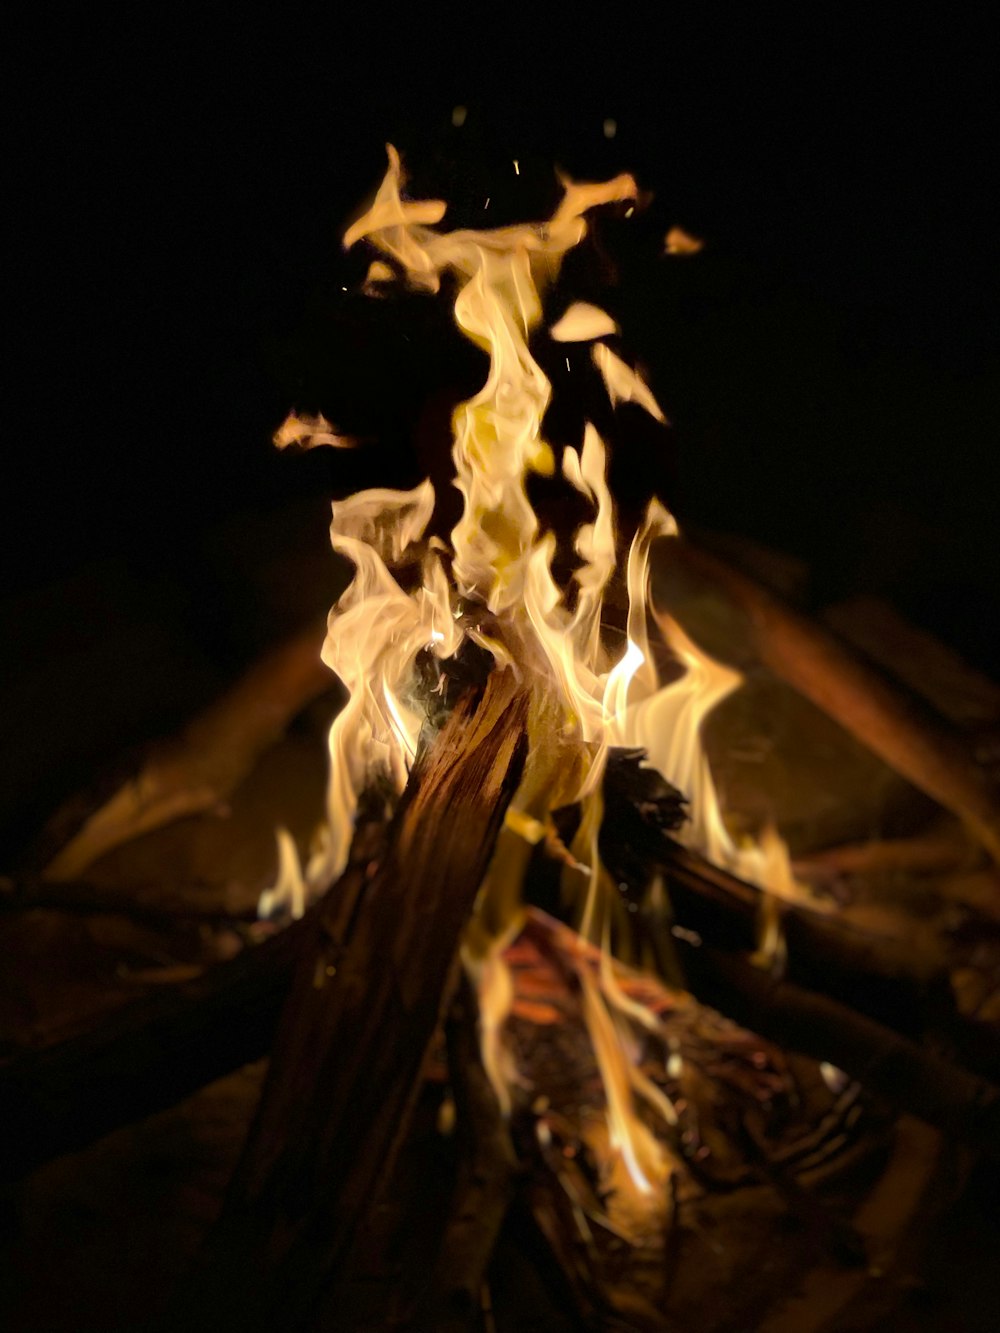 a close-up of a bonfire